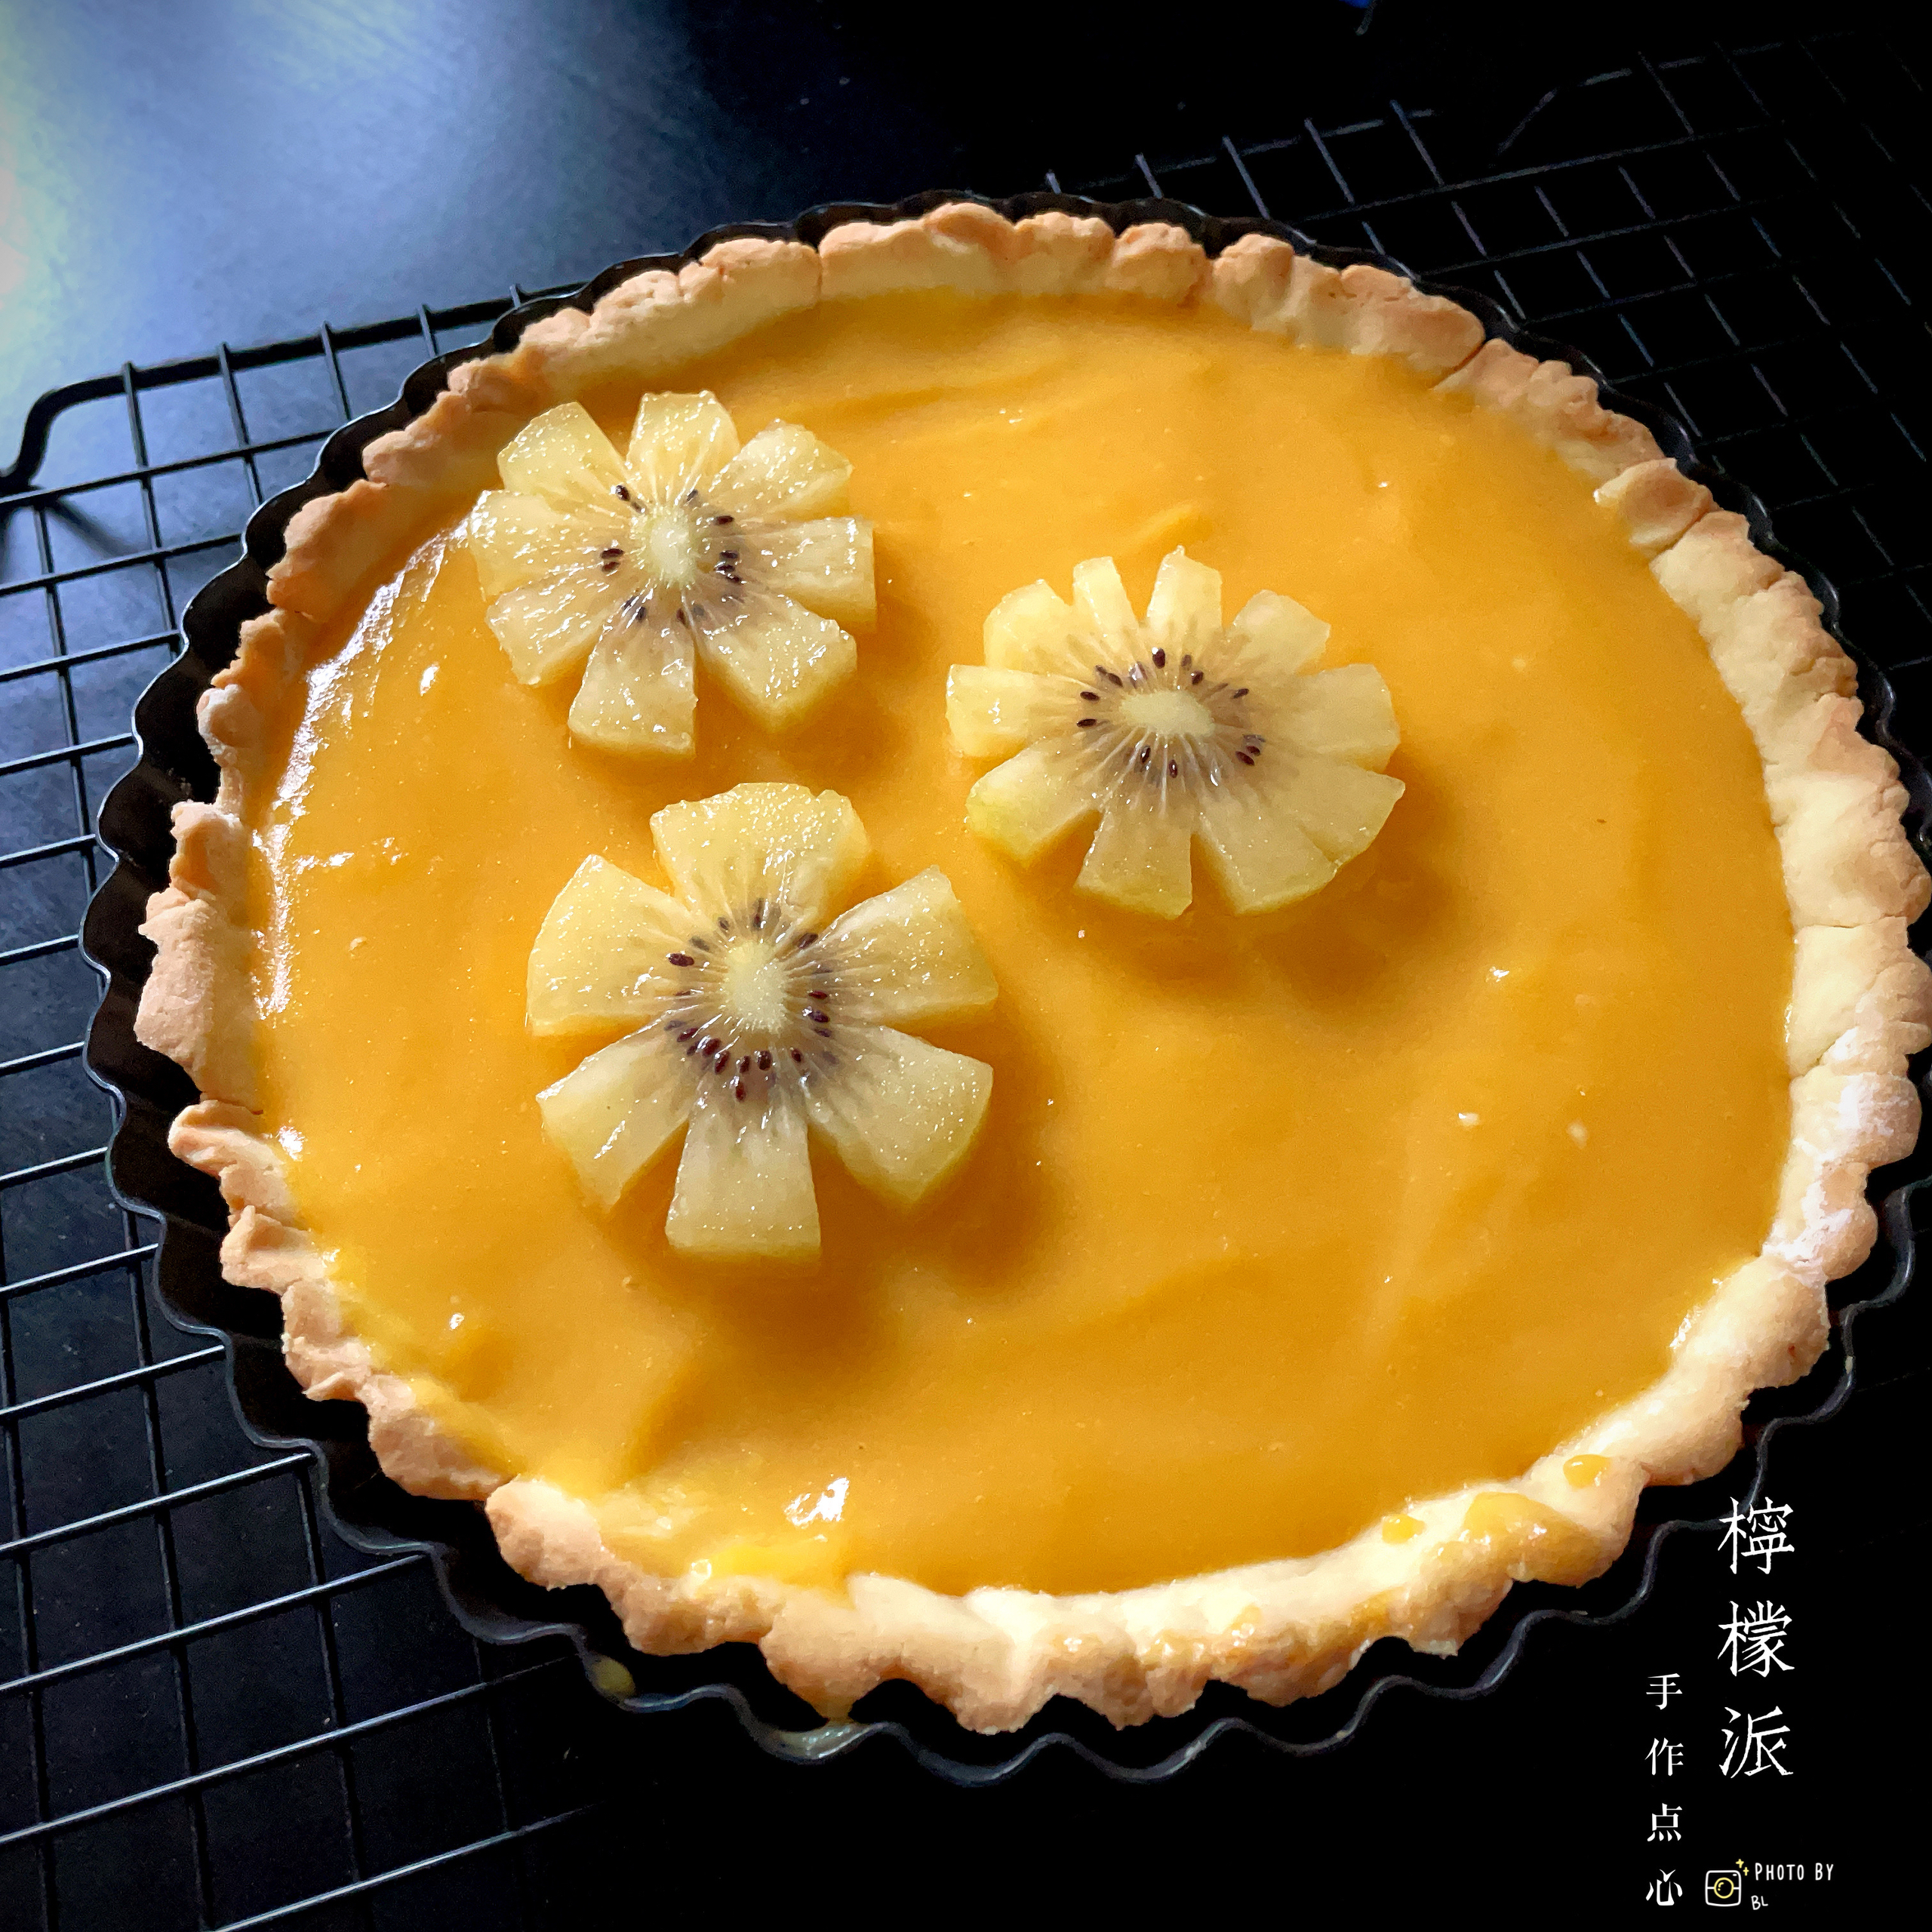 清新酸爽的柠檬派，绝对是最适合春节解腻的甜点！